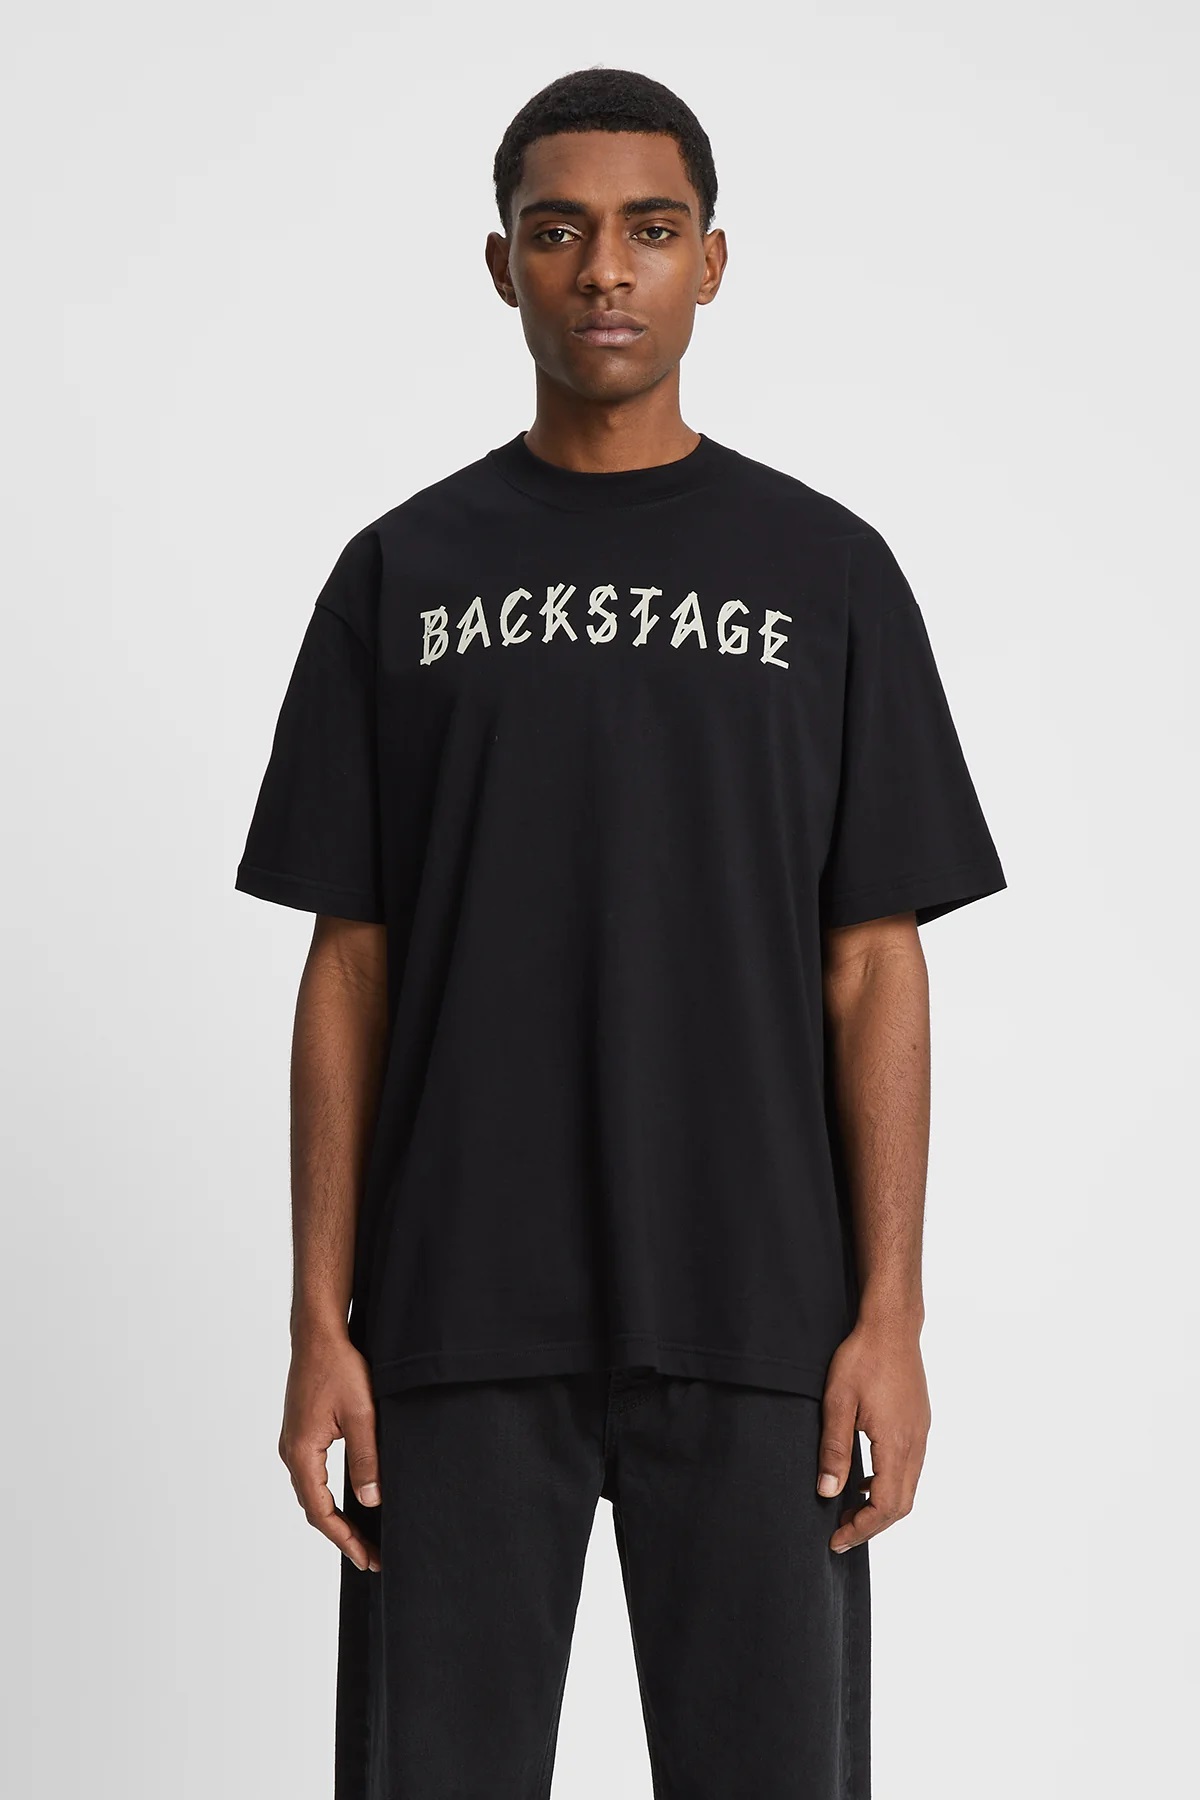 44 LABEL GROUP Backstage T-Shirt in Black L